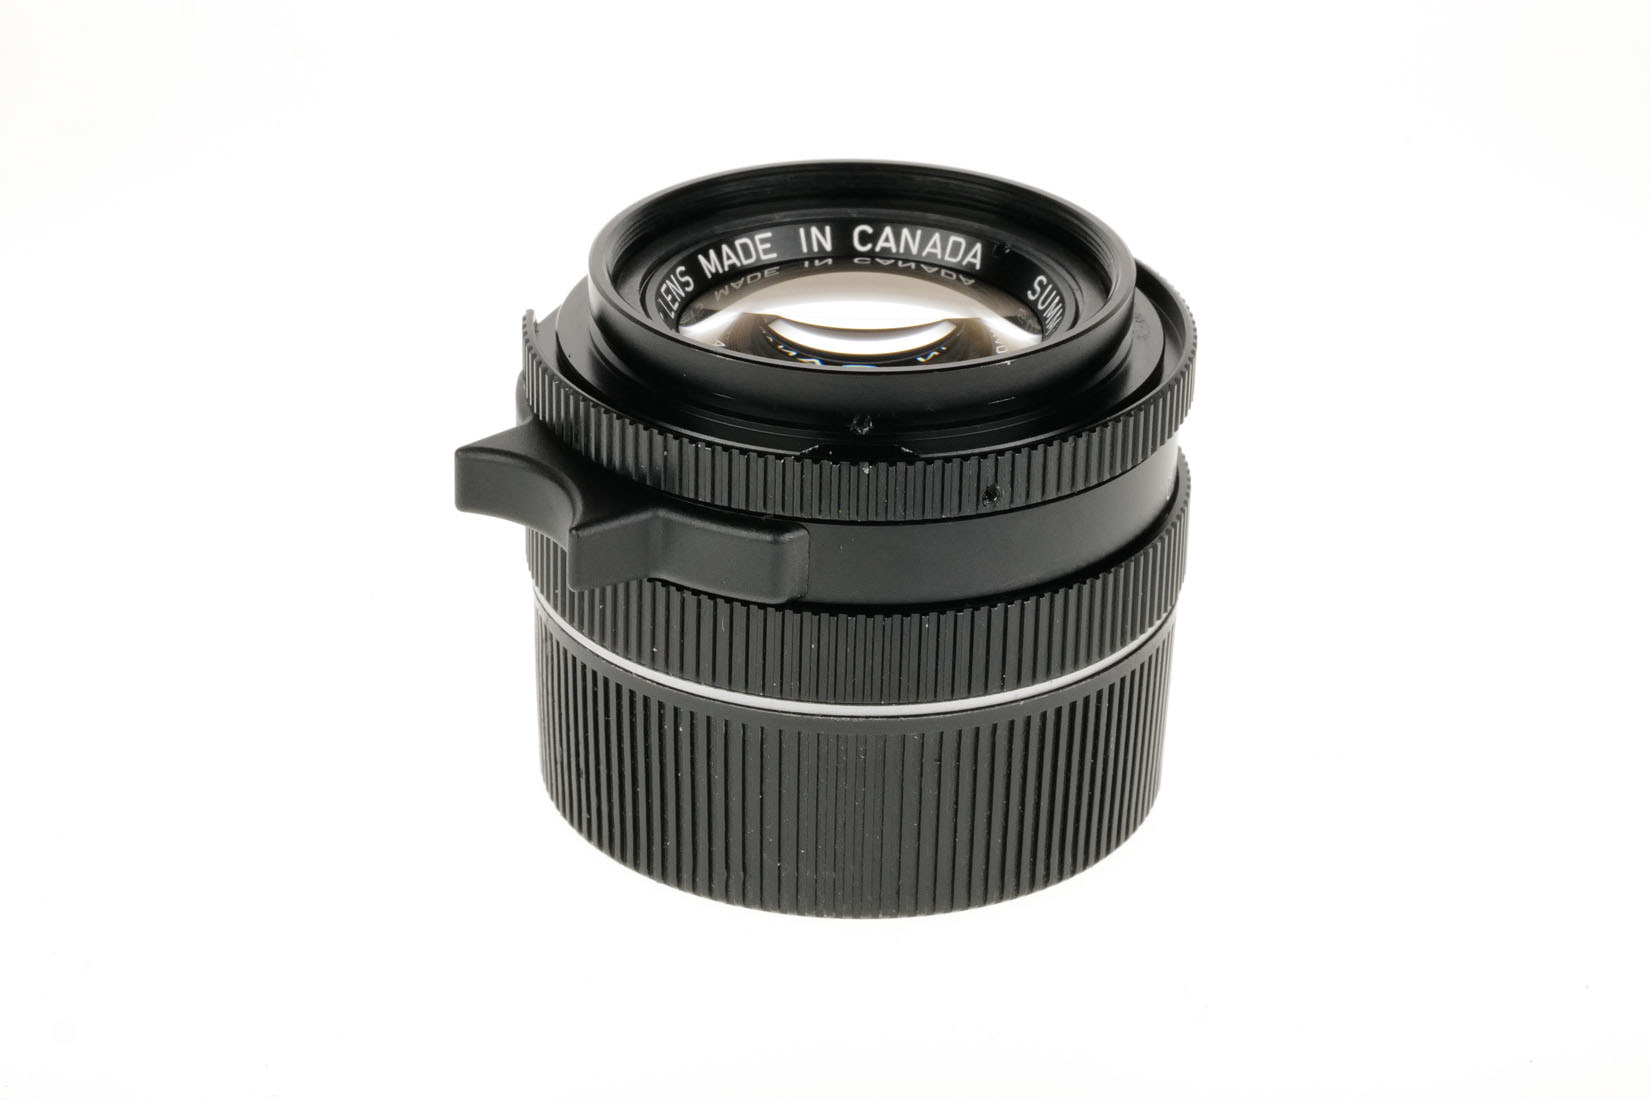 Leica SUMMICRON-M 2/35mm KOB, schwarz 11310